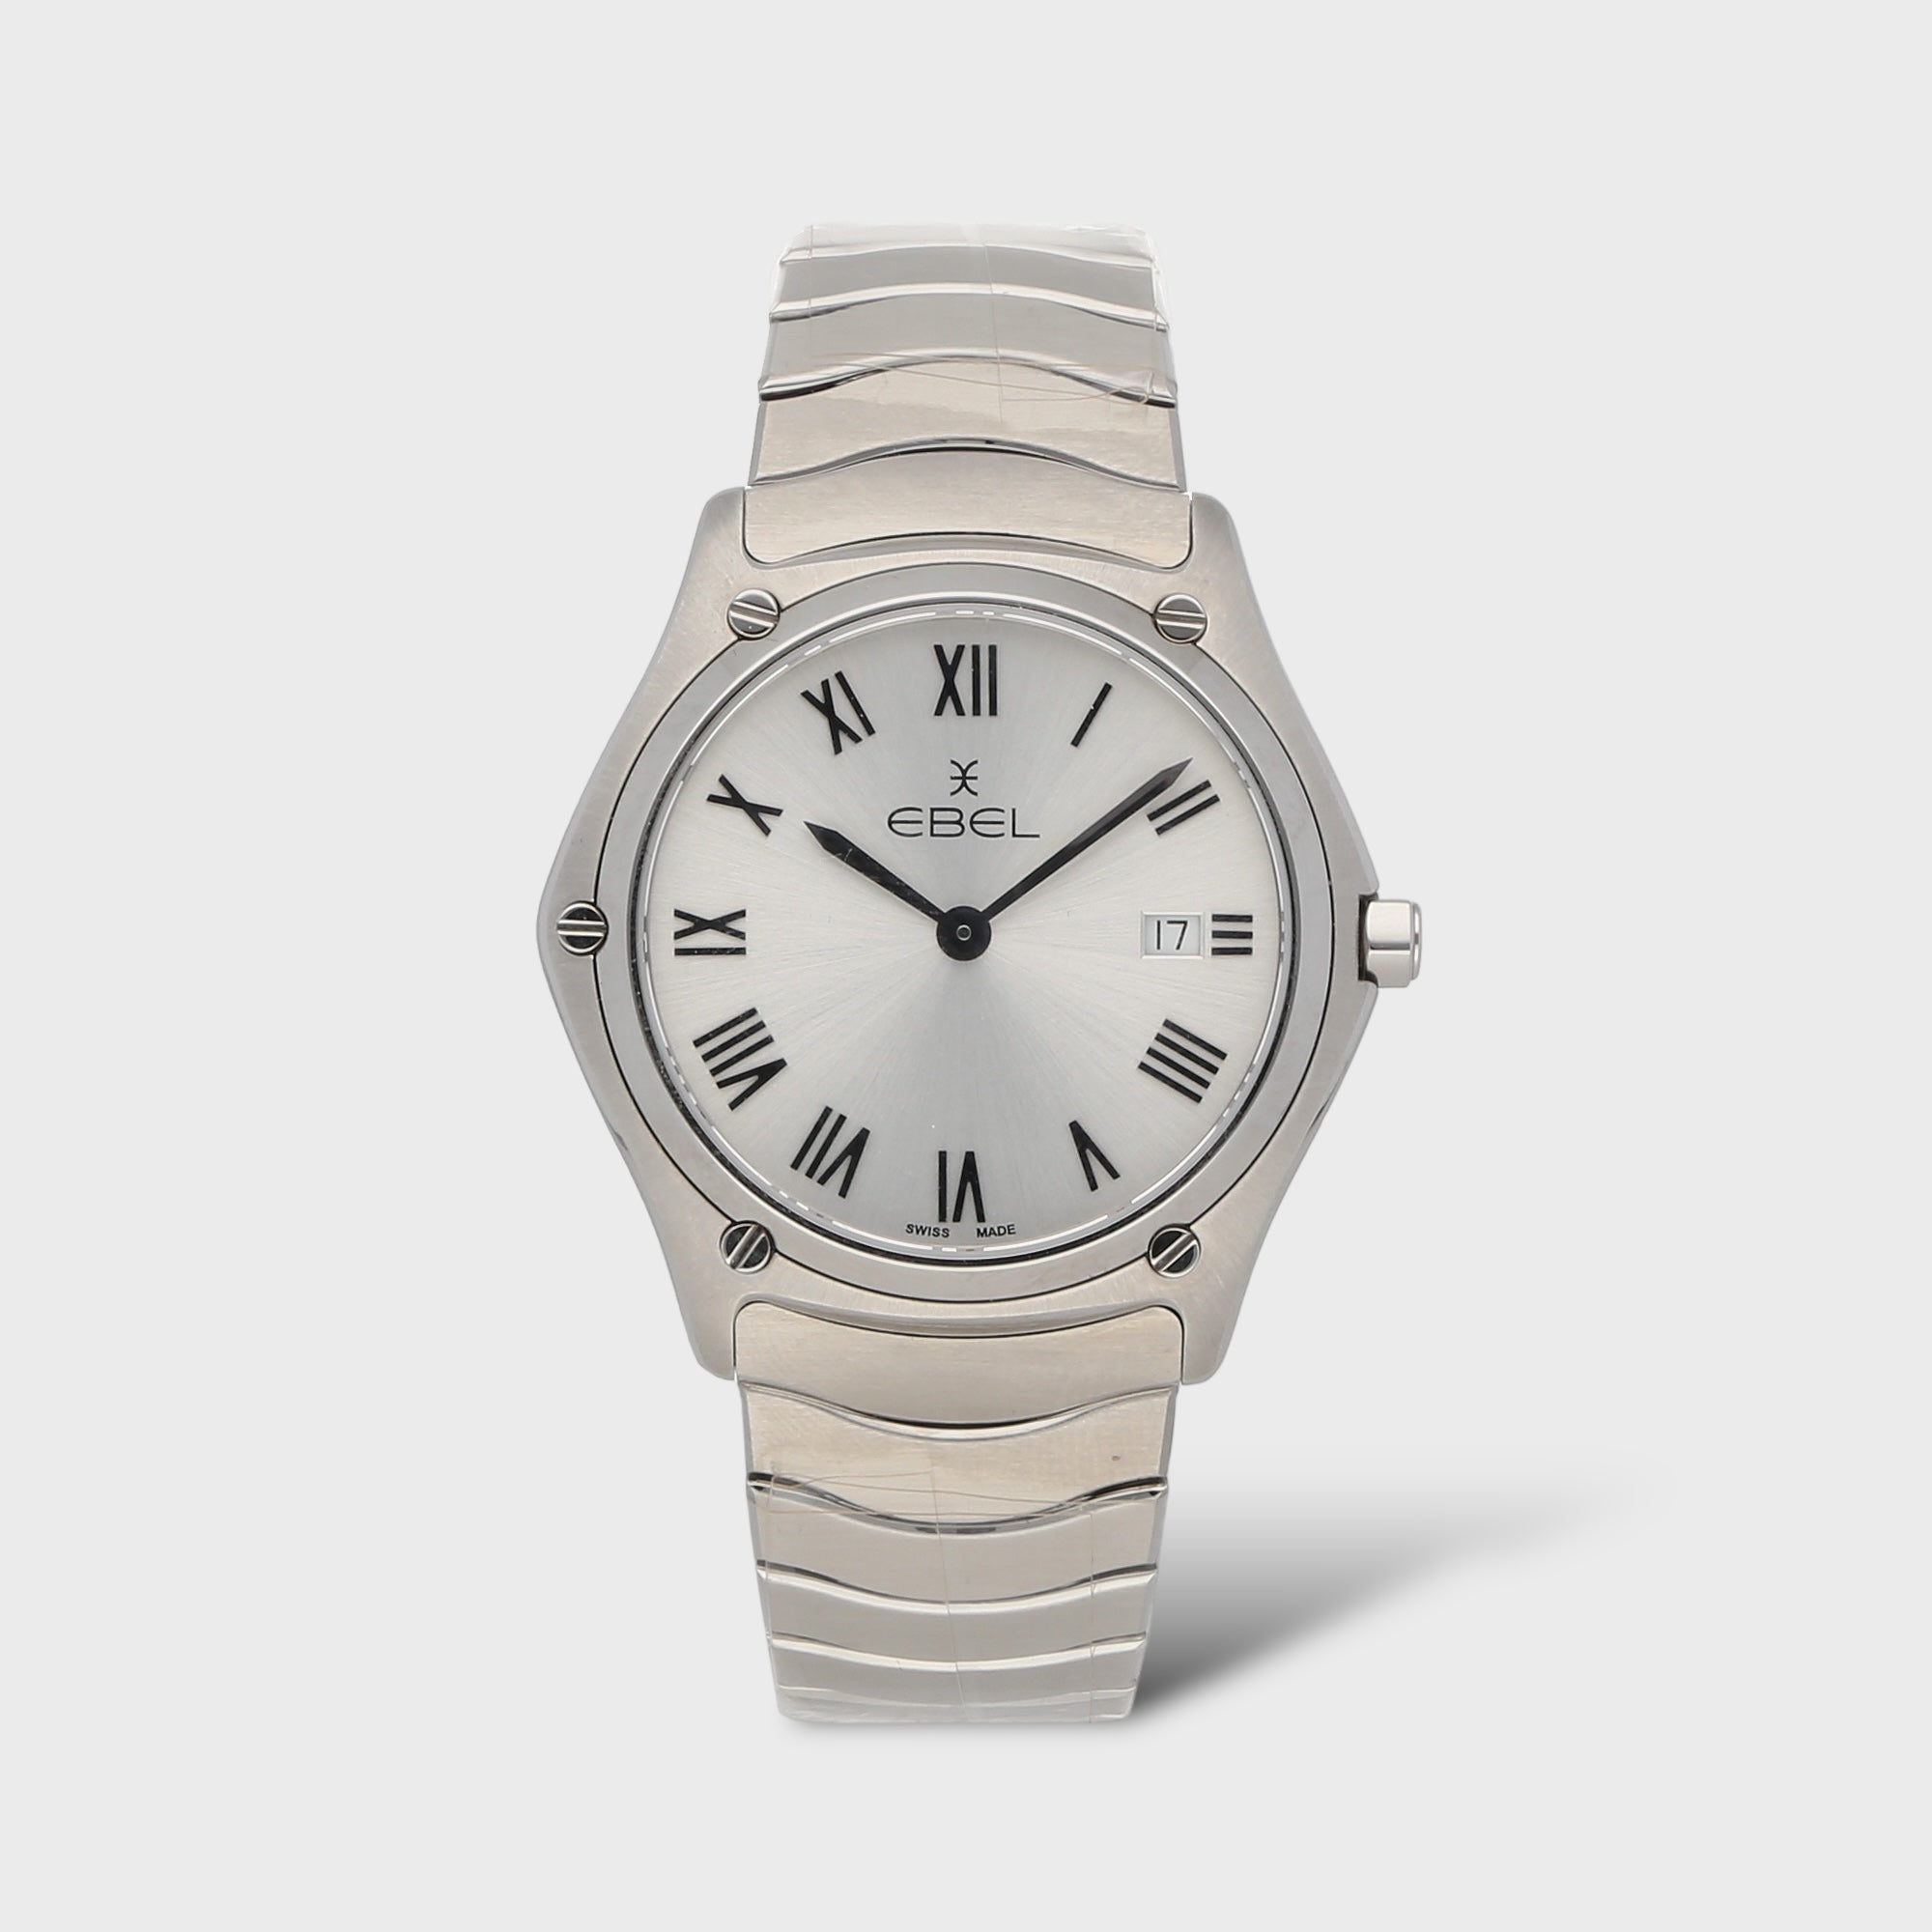 Second Hand Ebel Uhr jetzt online kaufen auf kaleaz.